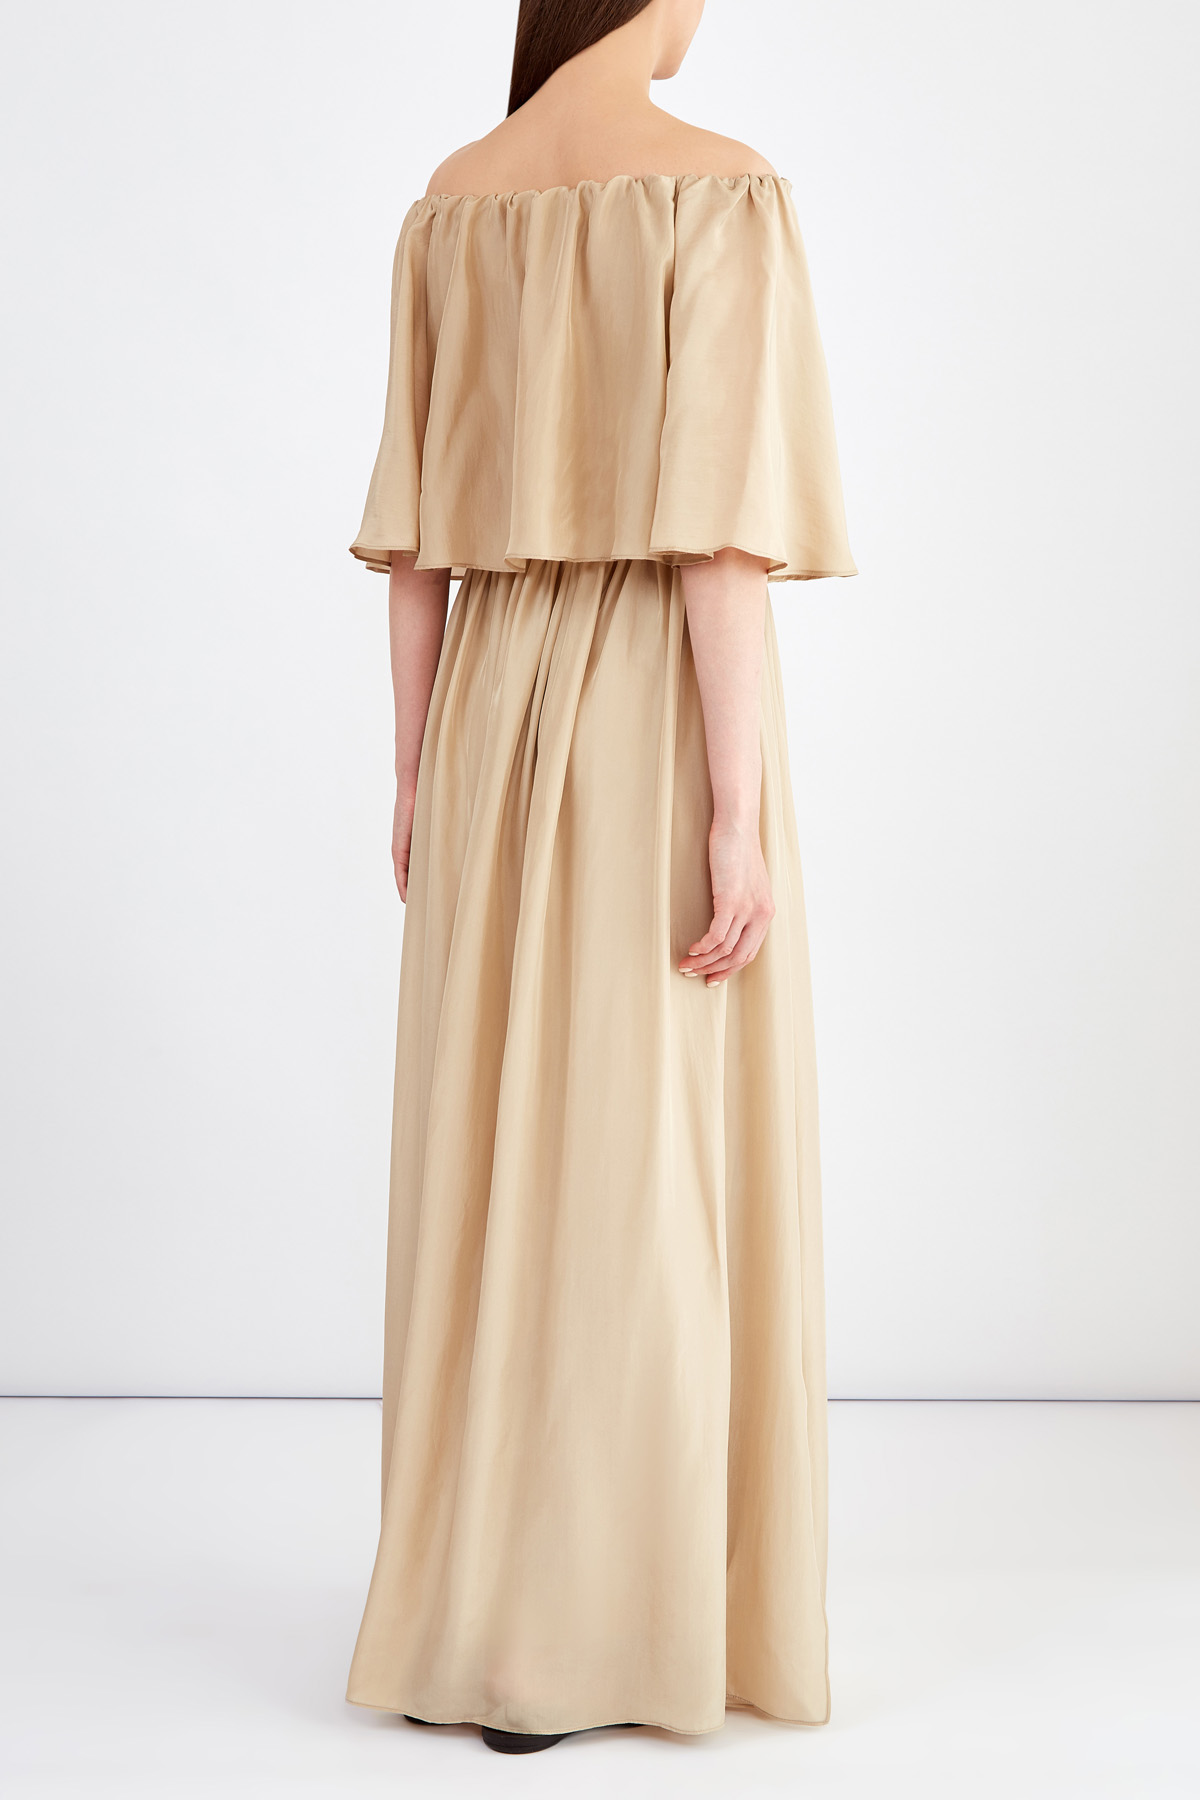 Шелковое платье в пол в стиле бохо с драпировками BRUNELLO CUCINELLI, цвет бежевый, размер 44;42 - фото 4